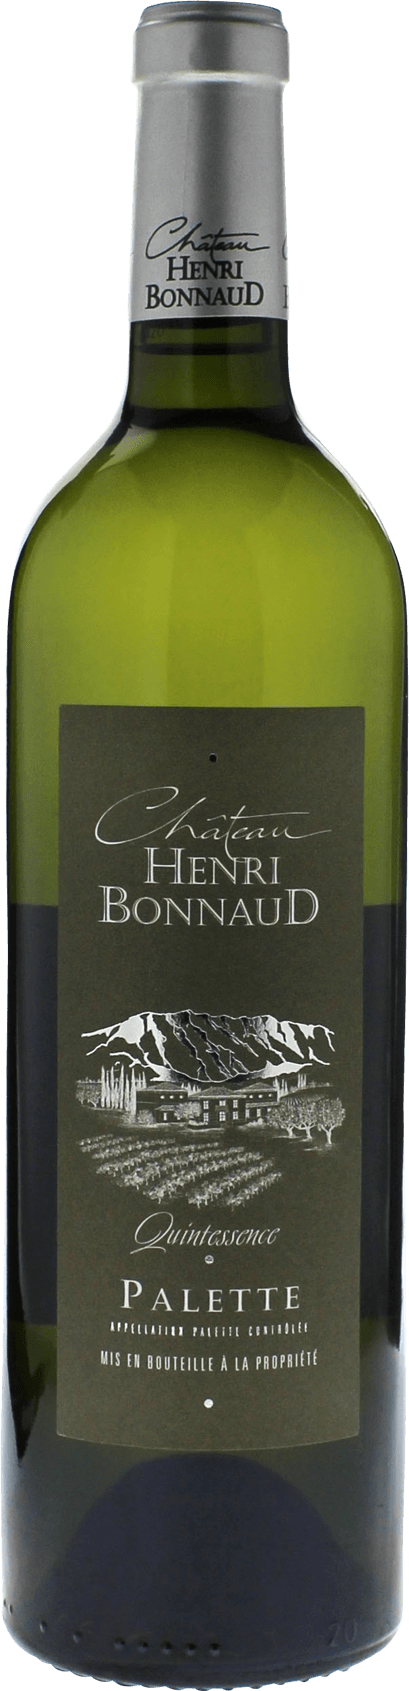 Domaine henri bonnaud quintessence blanc 2015  Palette, Slection provence blanc